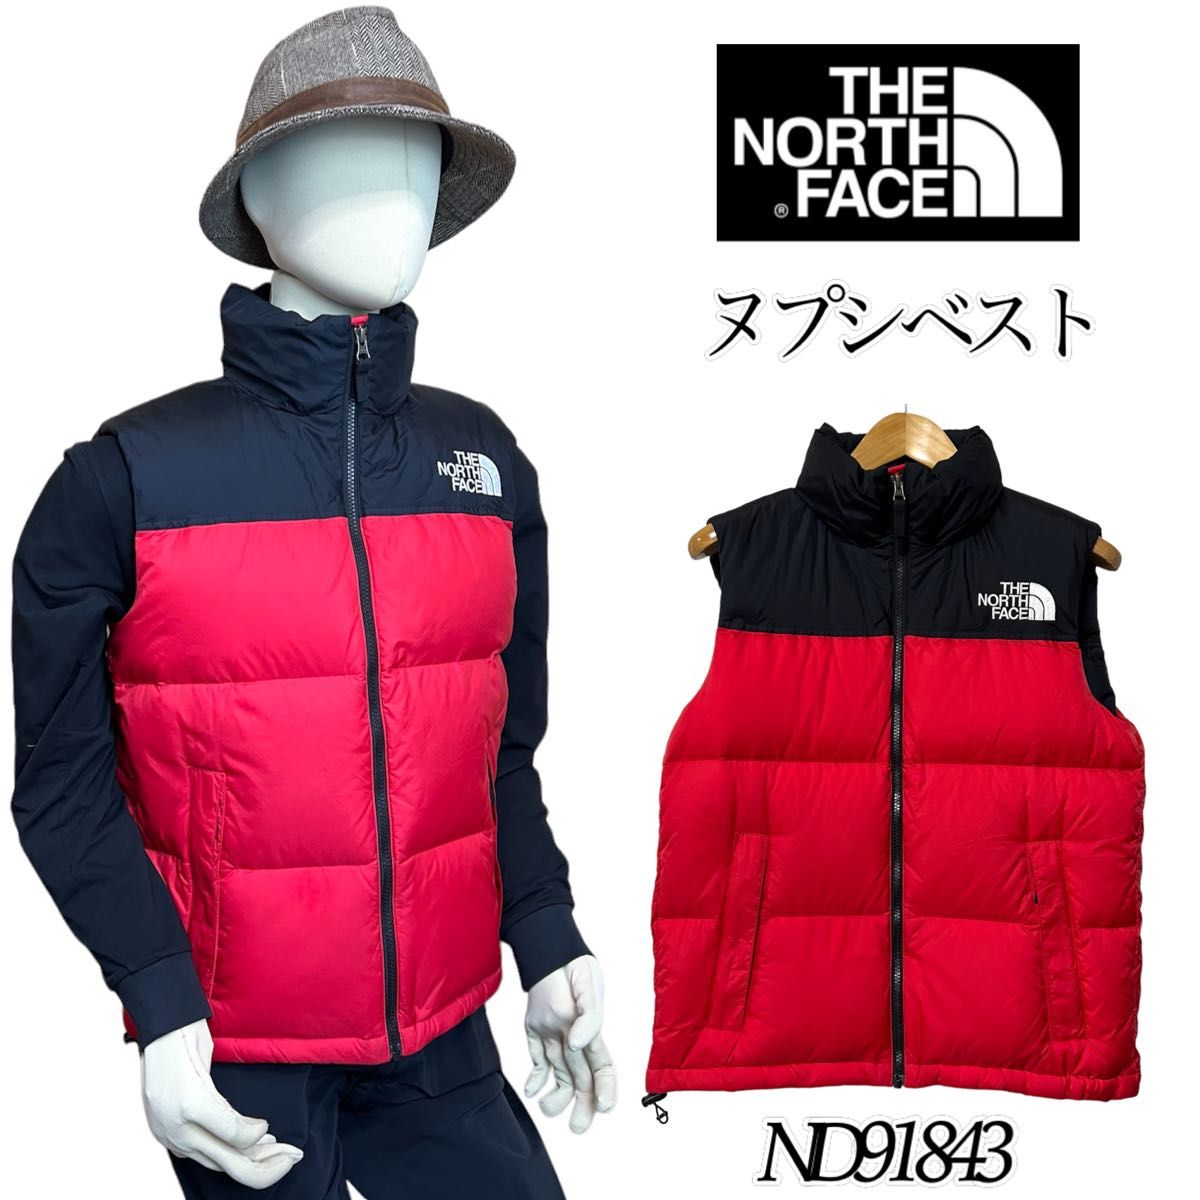 【大人気】THE NORTH FACE ノースフェイス ヌプシベスト メンズM TNFレッド ND91843 ダウンベスト 赤×黒